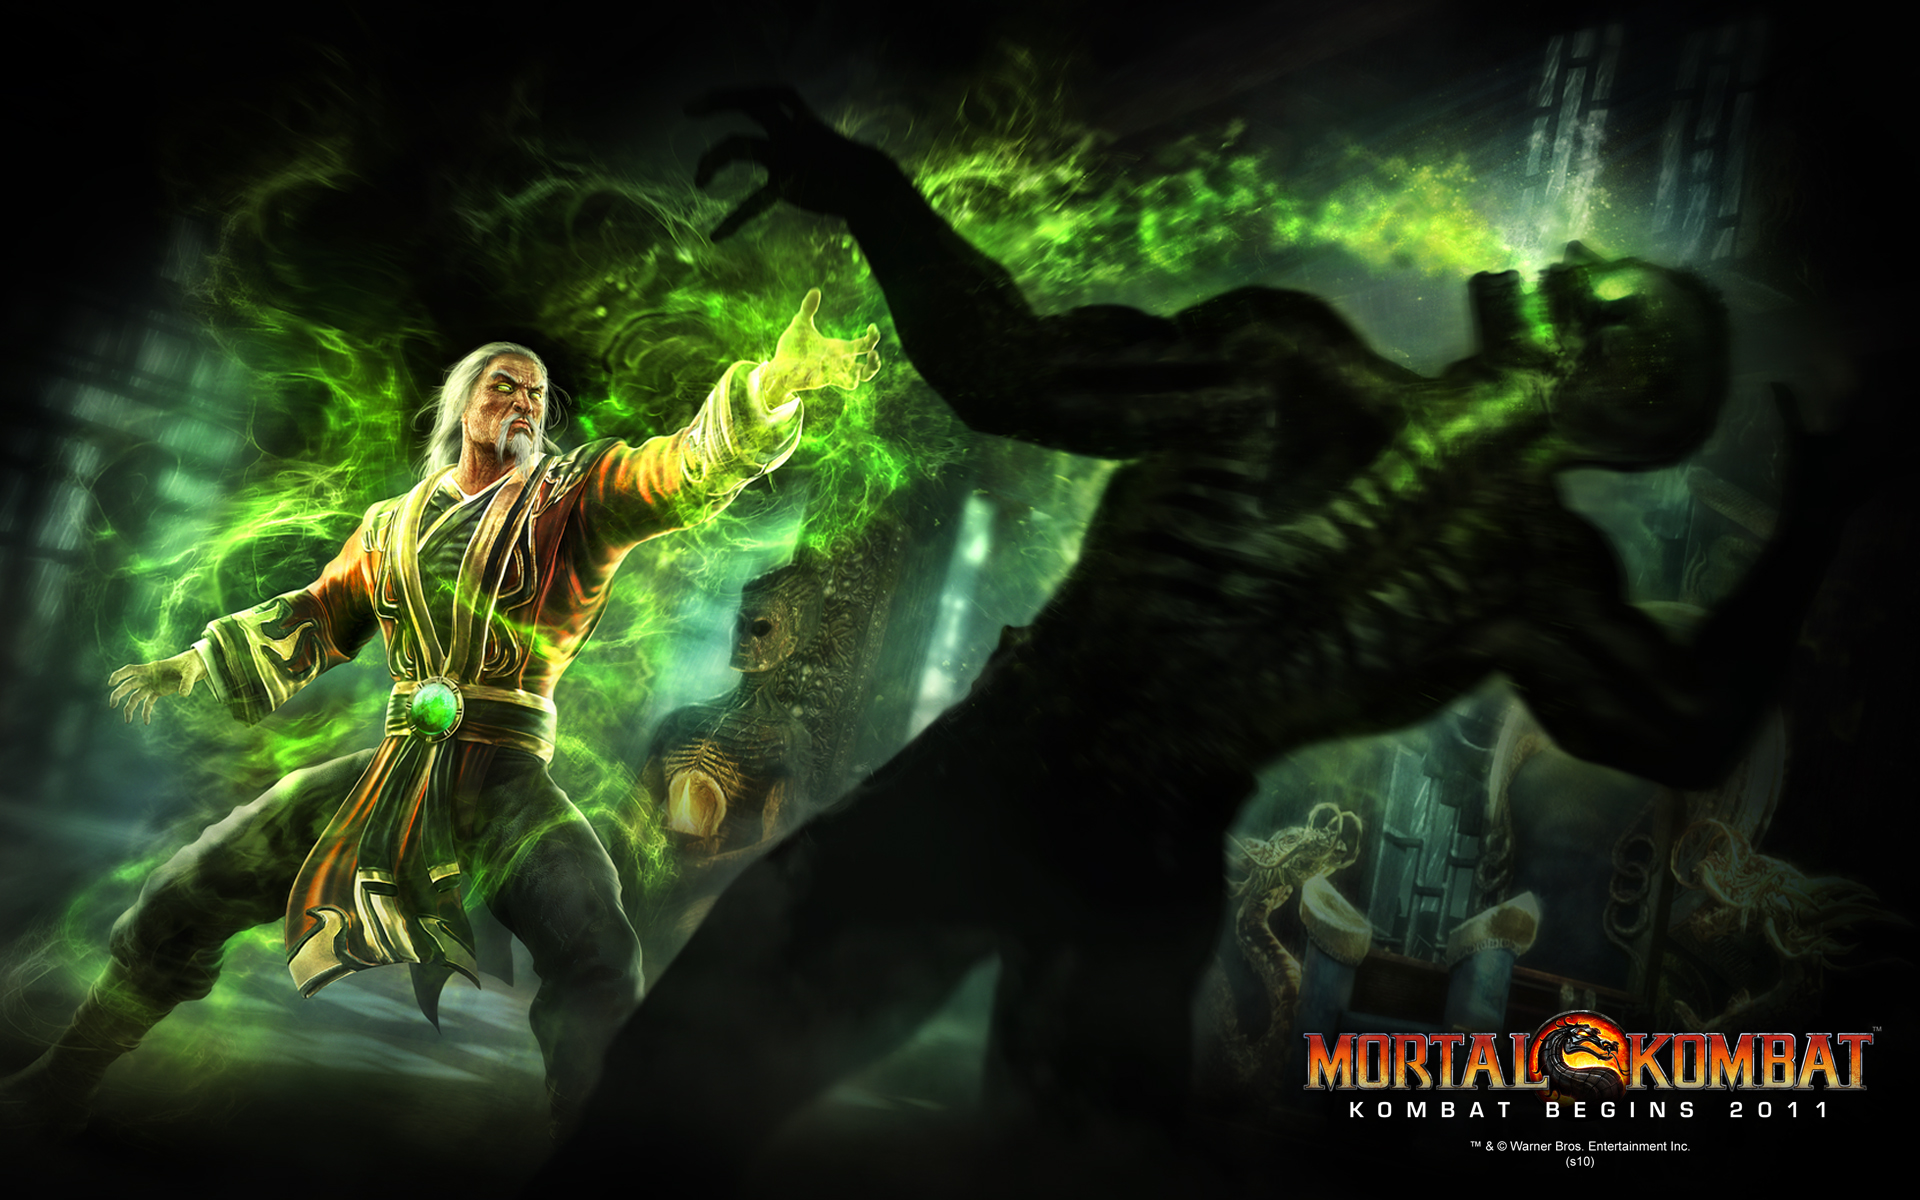 Shang Tsung Mortal Kombat 9 Moves, Combos, Strategy Guide 